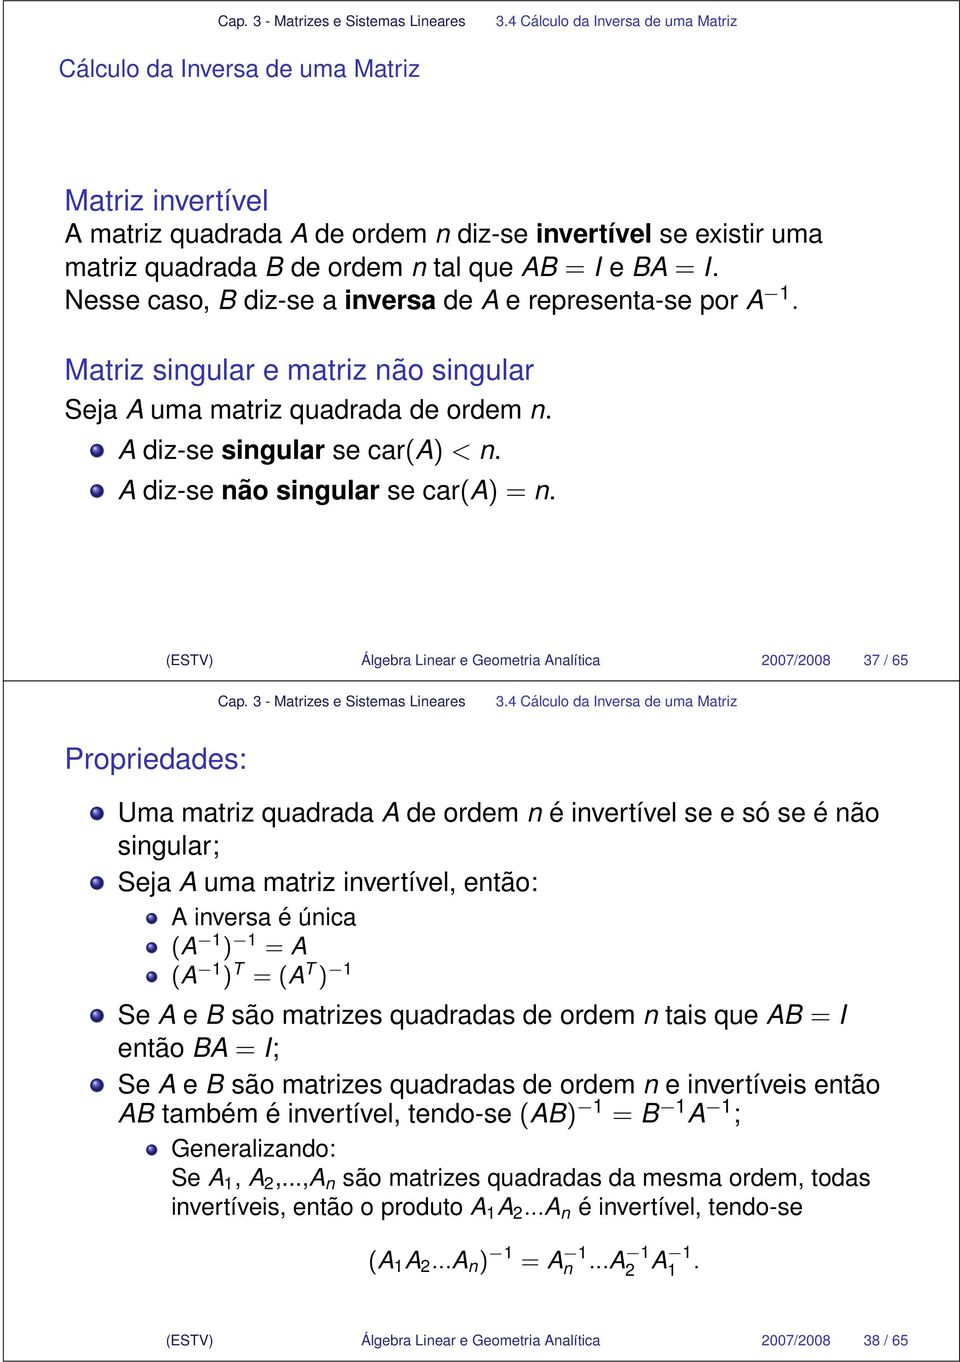 =n (ESTV) Álgebra Linear e Geometria Analítica 007/008 7 / 65 Cálculo da Inversa de uma Matriz Propriedades: Uma matriz quadrada A de ordem n é invertível se e só seénão singular; Seja A uma matriz